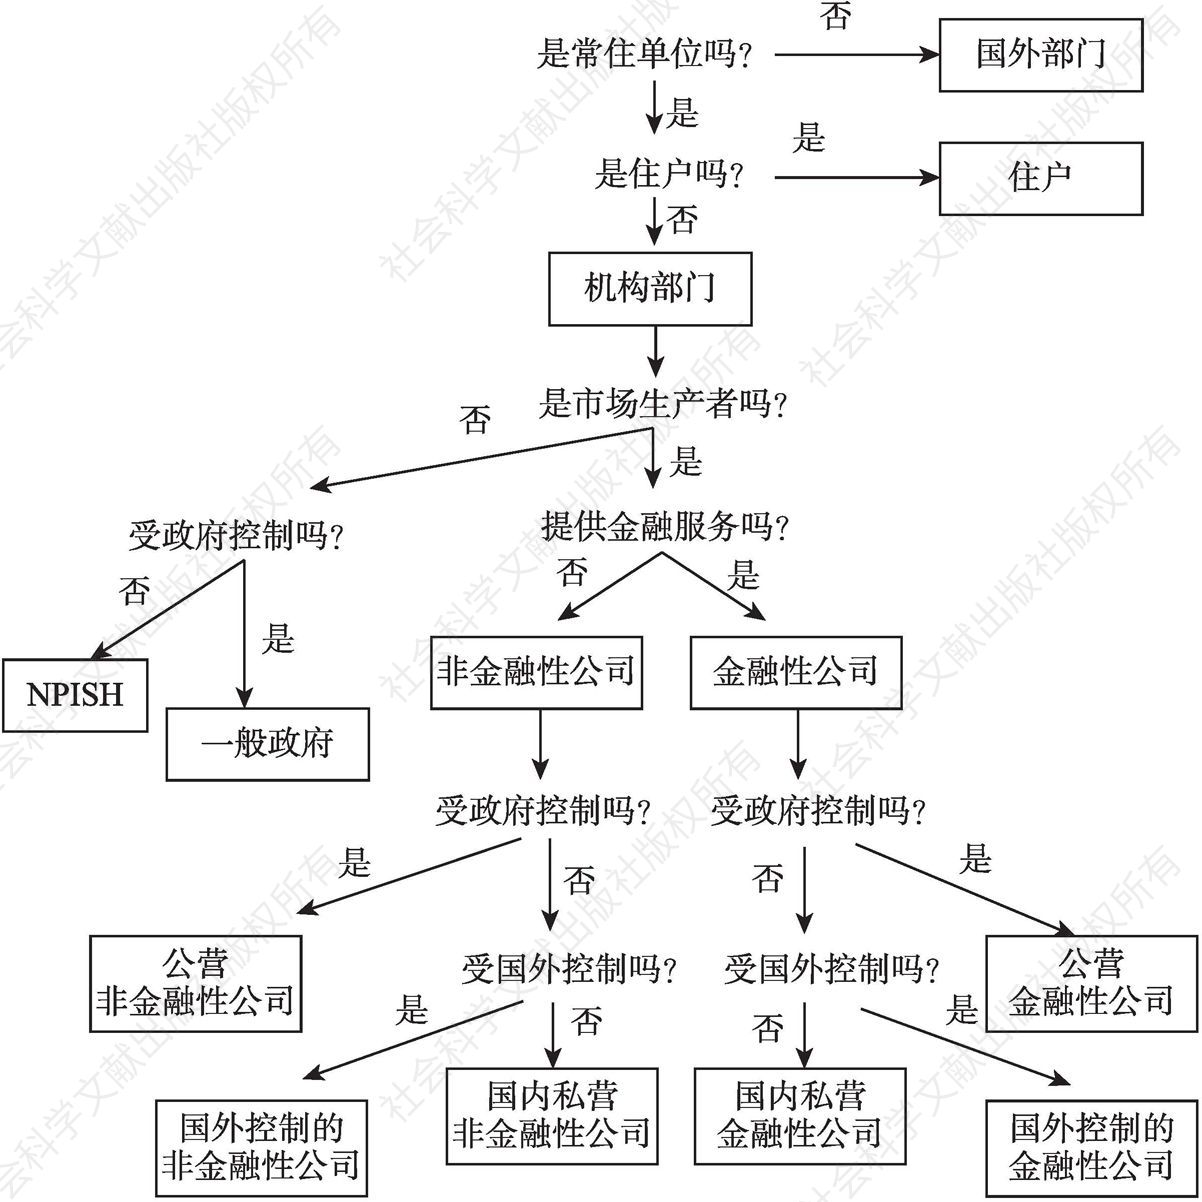 图7.1 机构部门划分流程